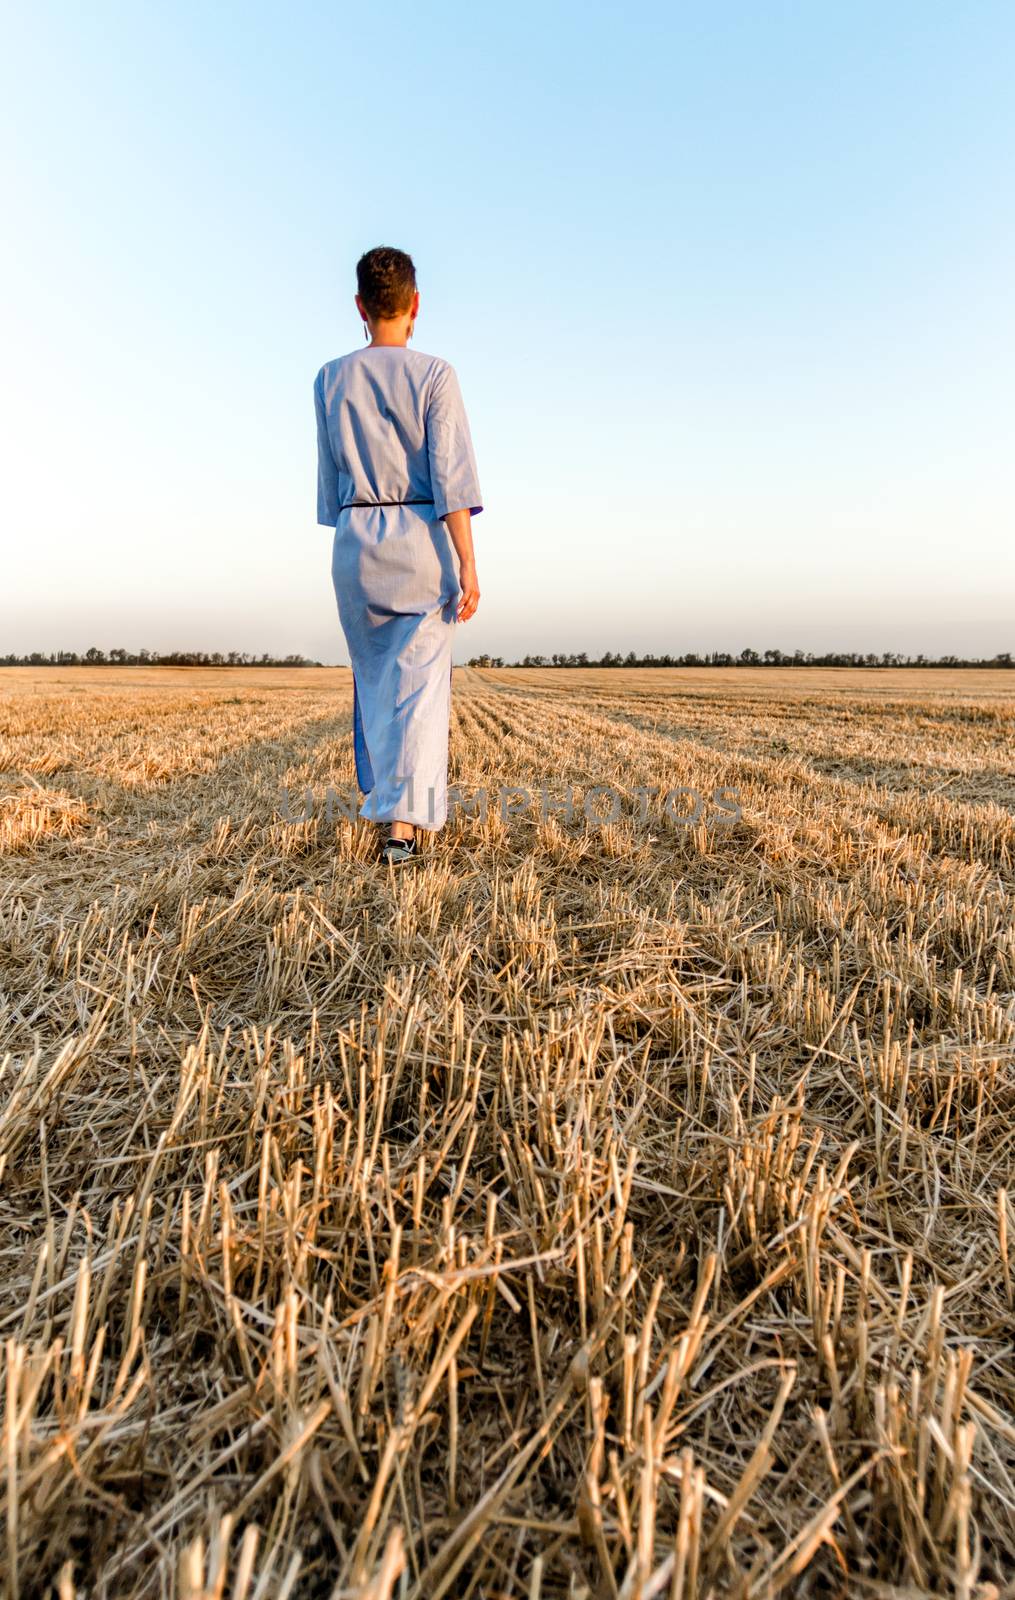 woman farmer walks through a mown wheat field in Ukraine by Gera8th